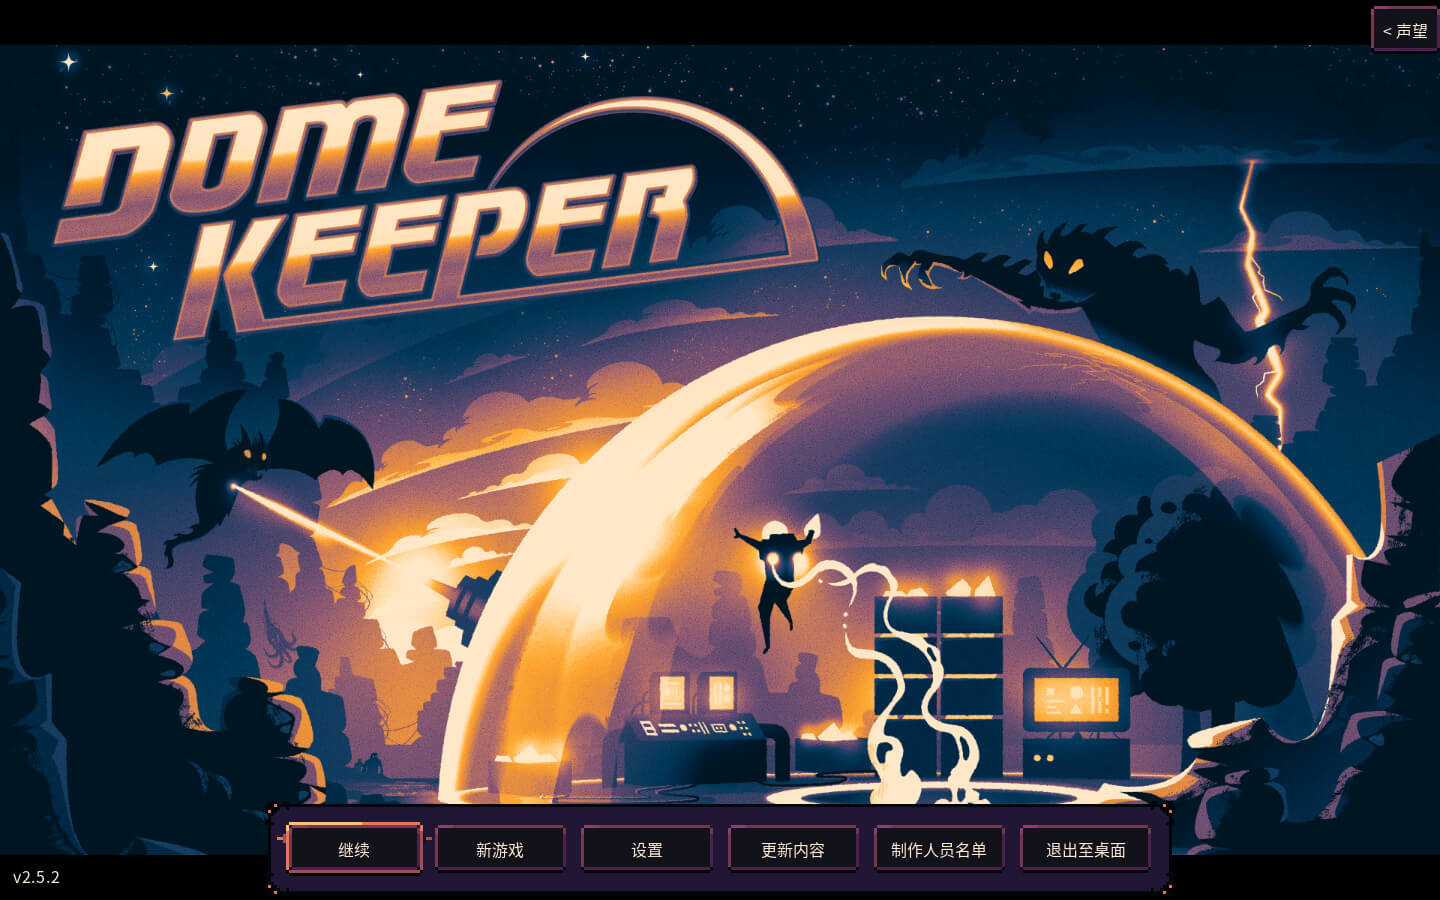 穹顶守护者 Dome Keeper for Mac v3.2 中文原生版-1